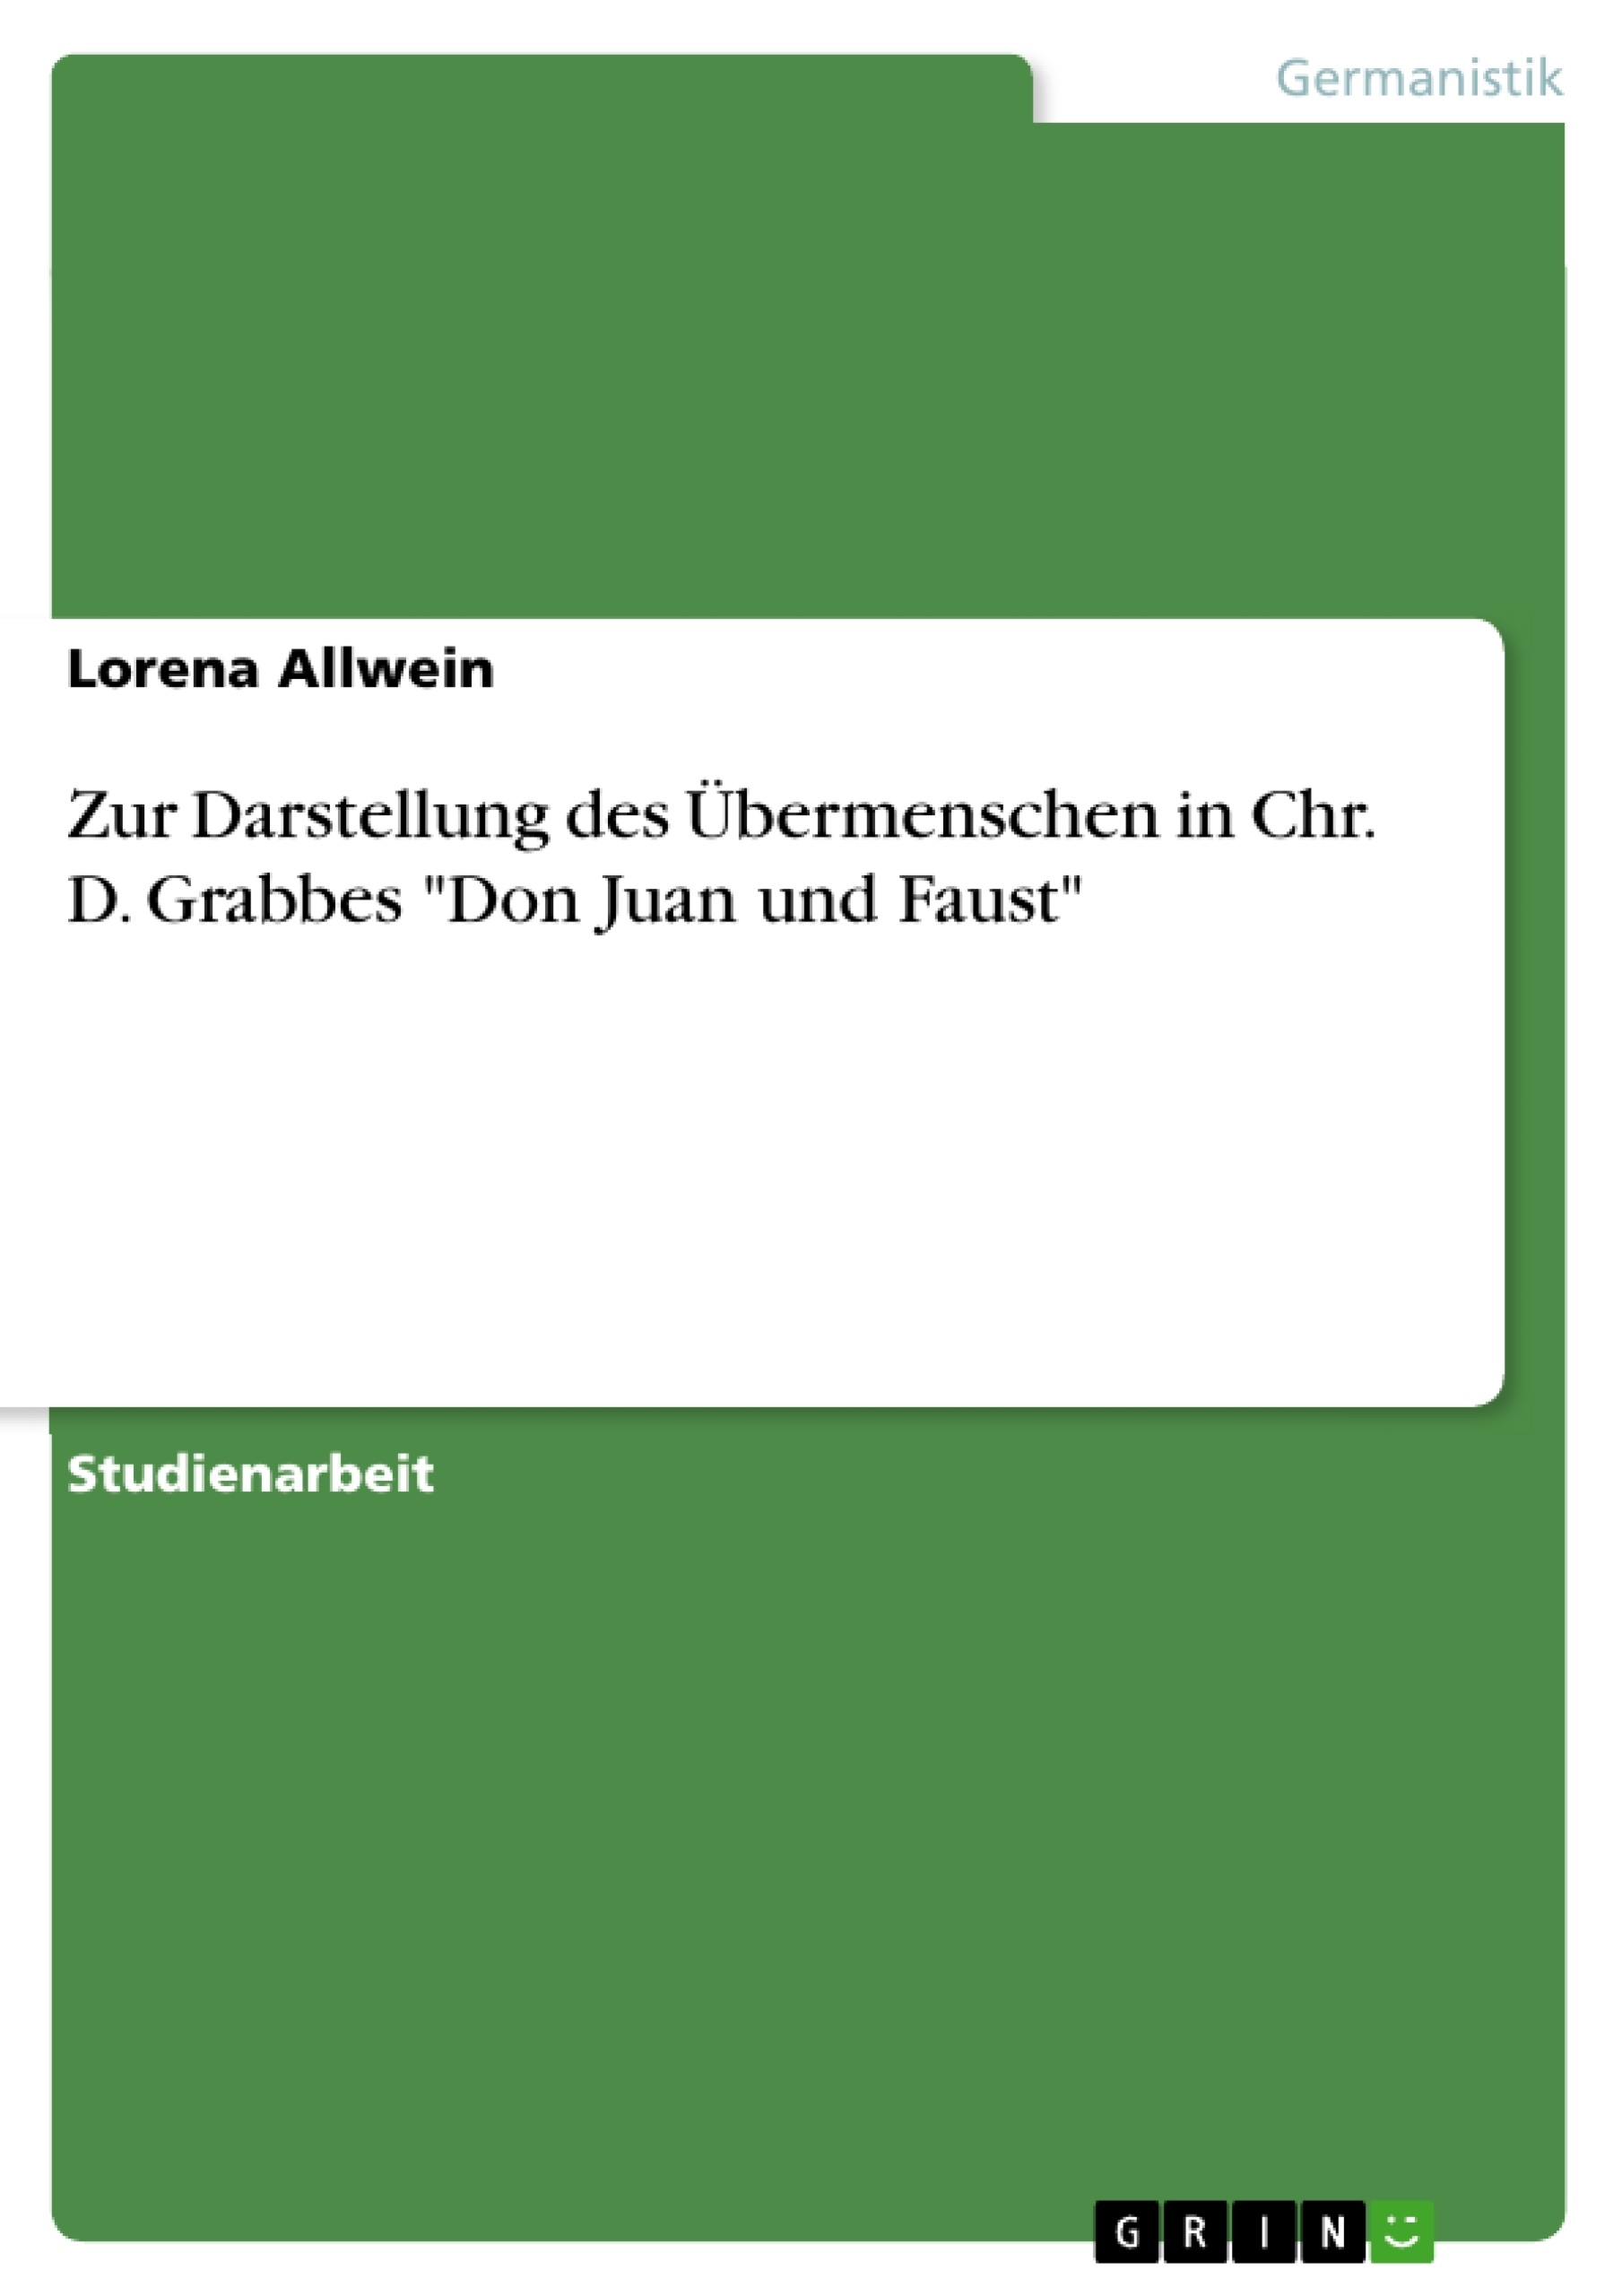 Titre: Zur Darstellung des Übermenschen in Chr. D. Grabbes "Don Juan und Faust"